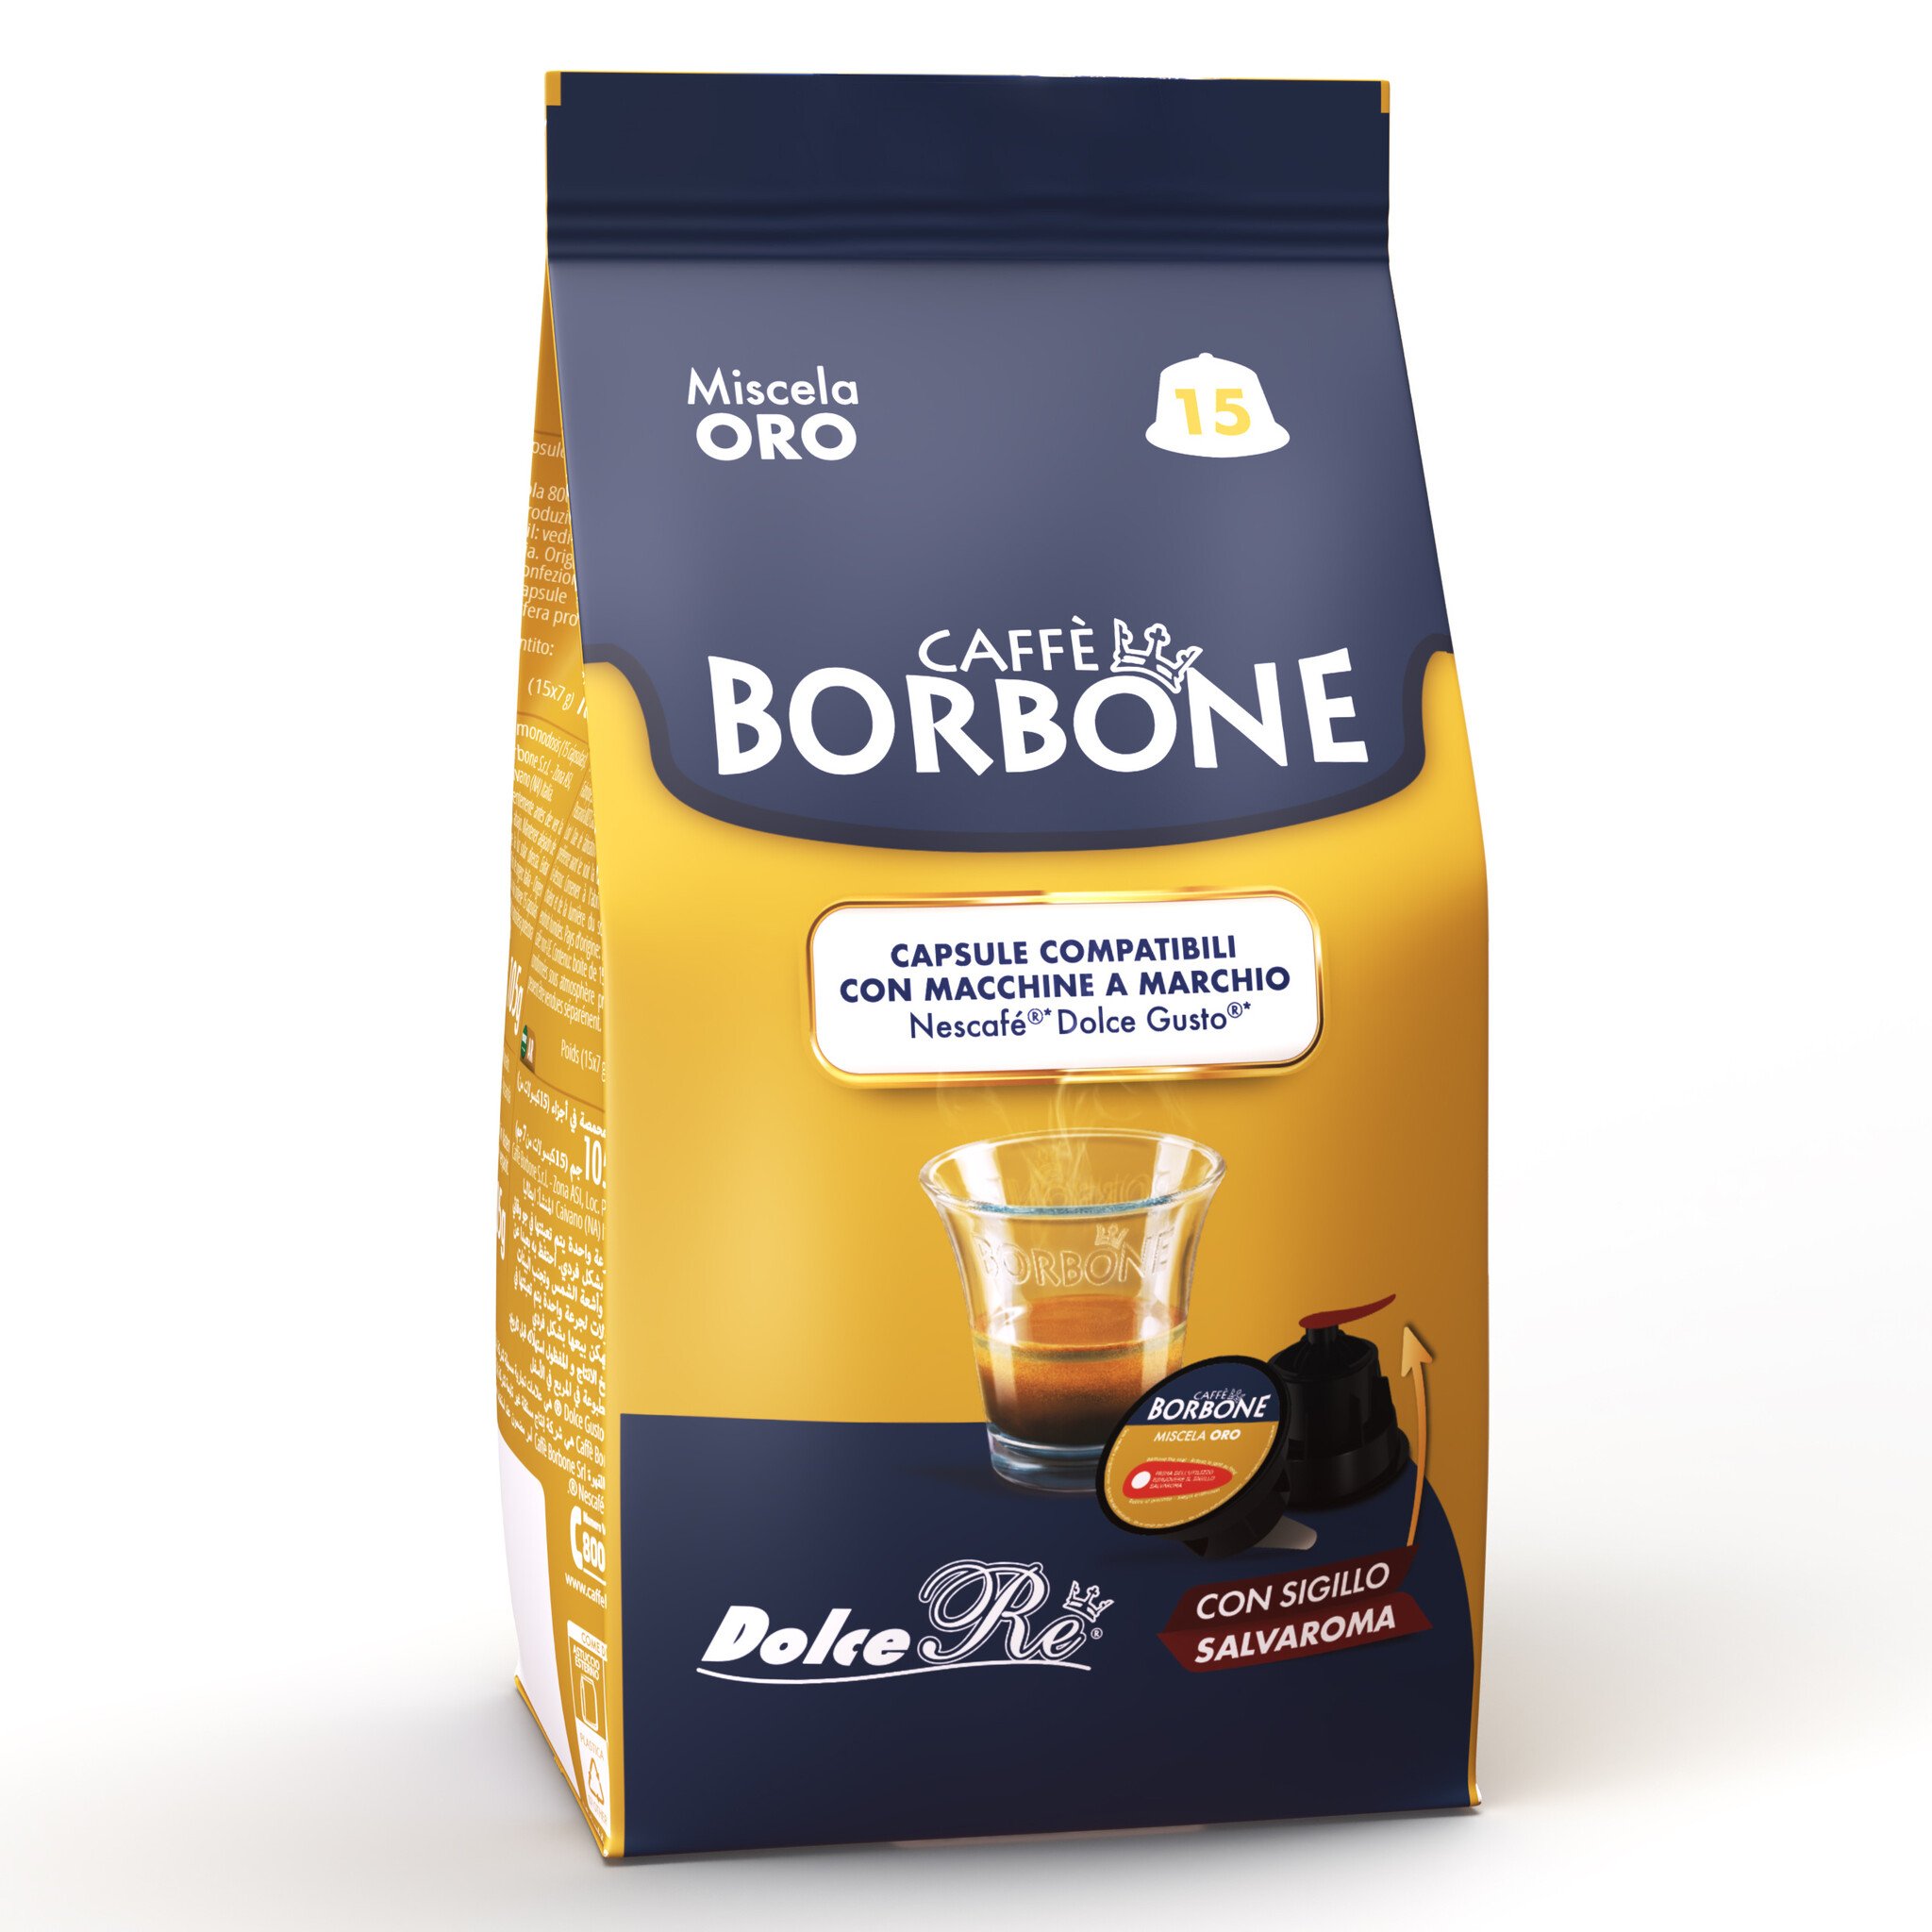 Caffè Borbone Miscela Oro capsules au meilleur prix sur